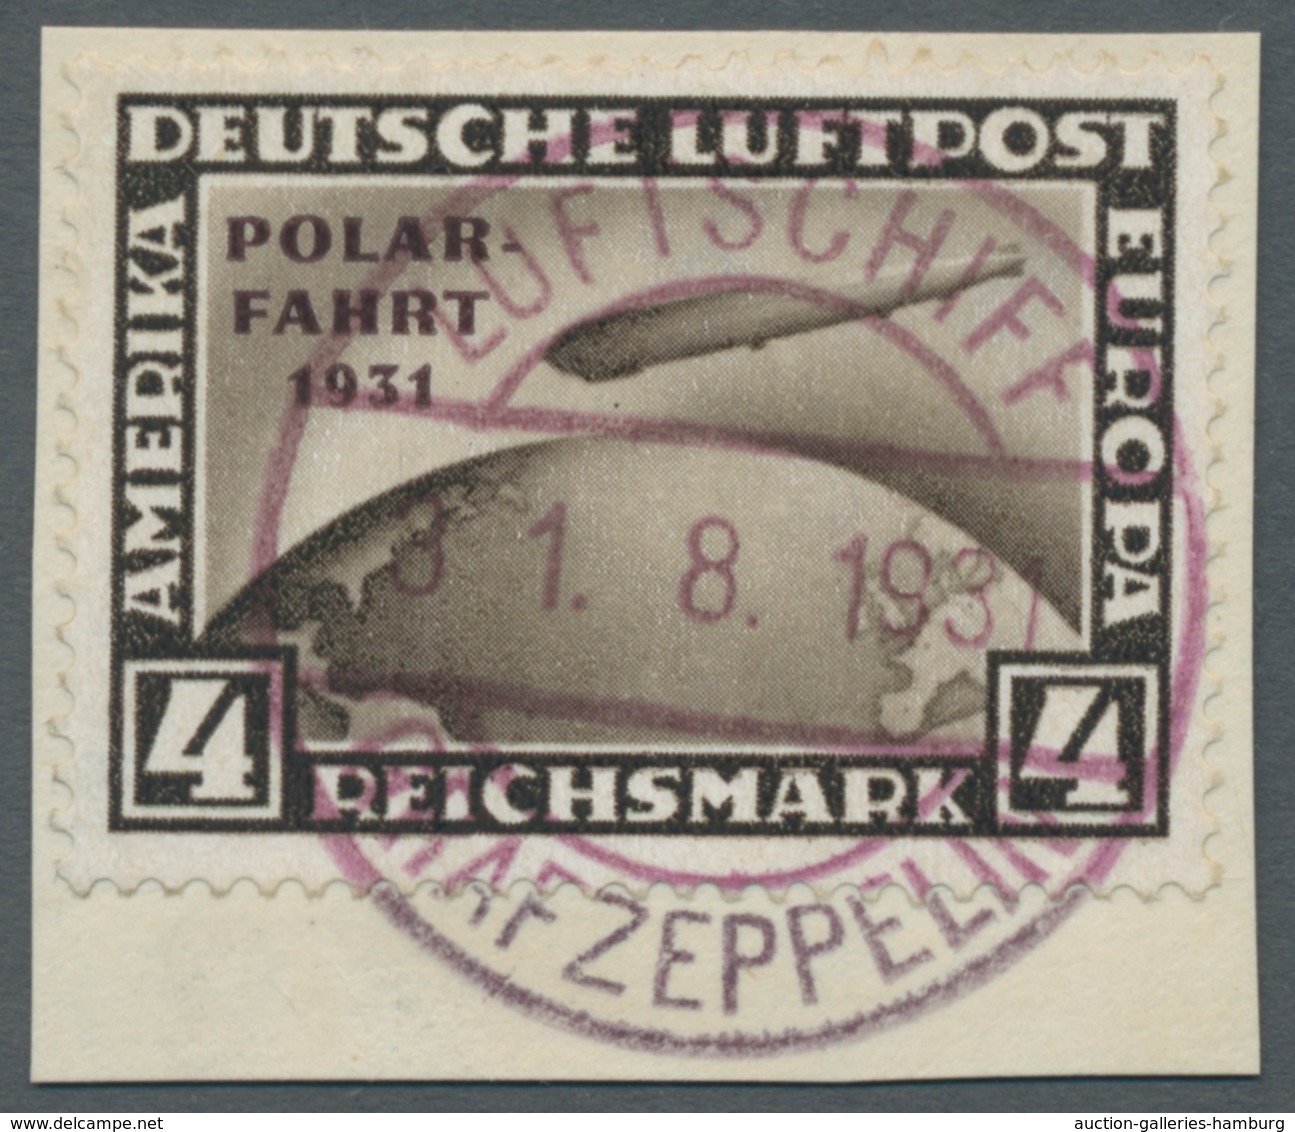 Deutsches Reich: 1872-1945, überwiegend sauber gestempelte Sammlung in 2 Lindner Alben. beginnend mi